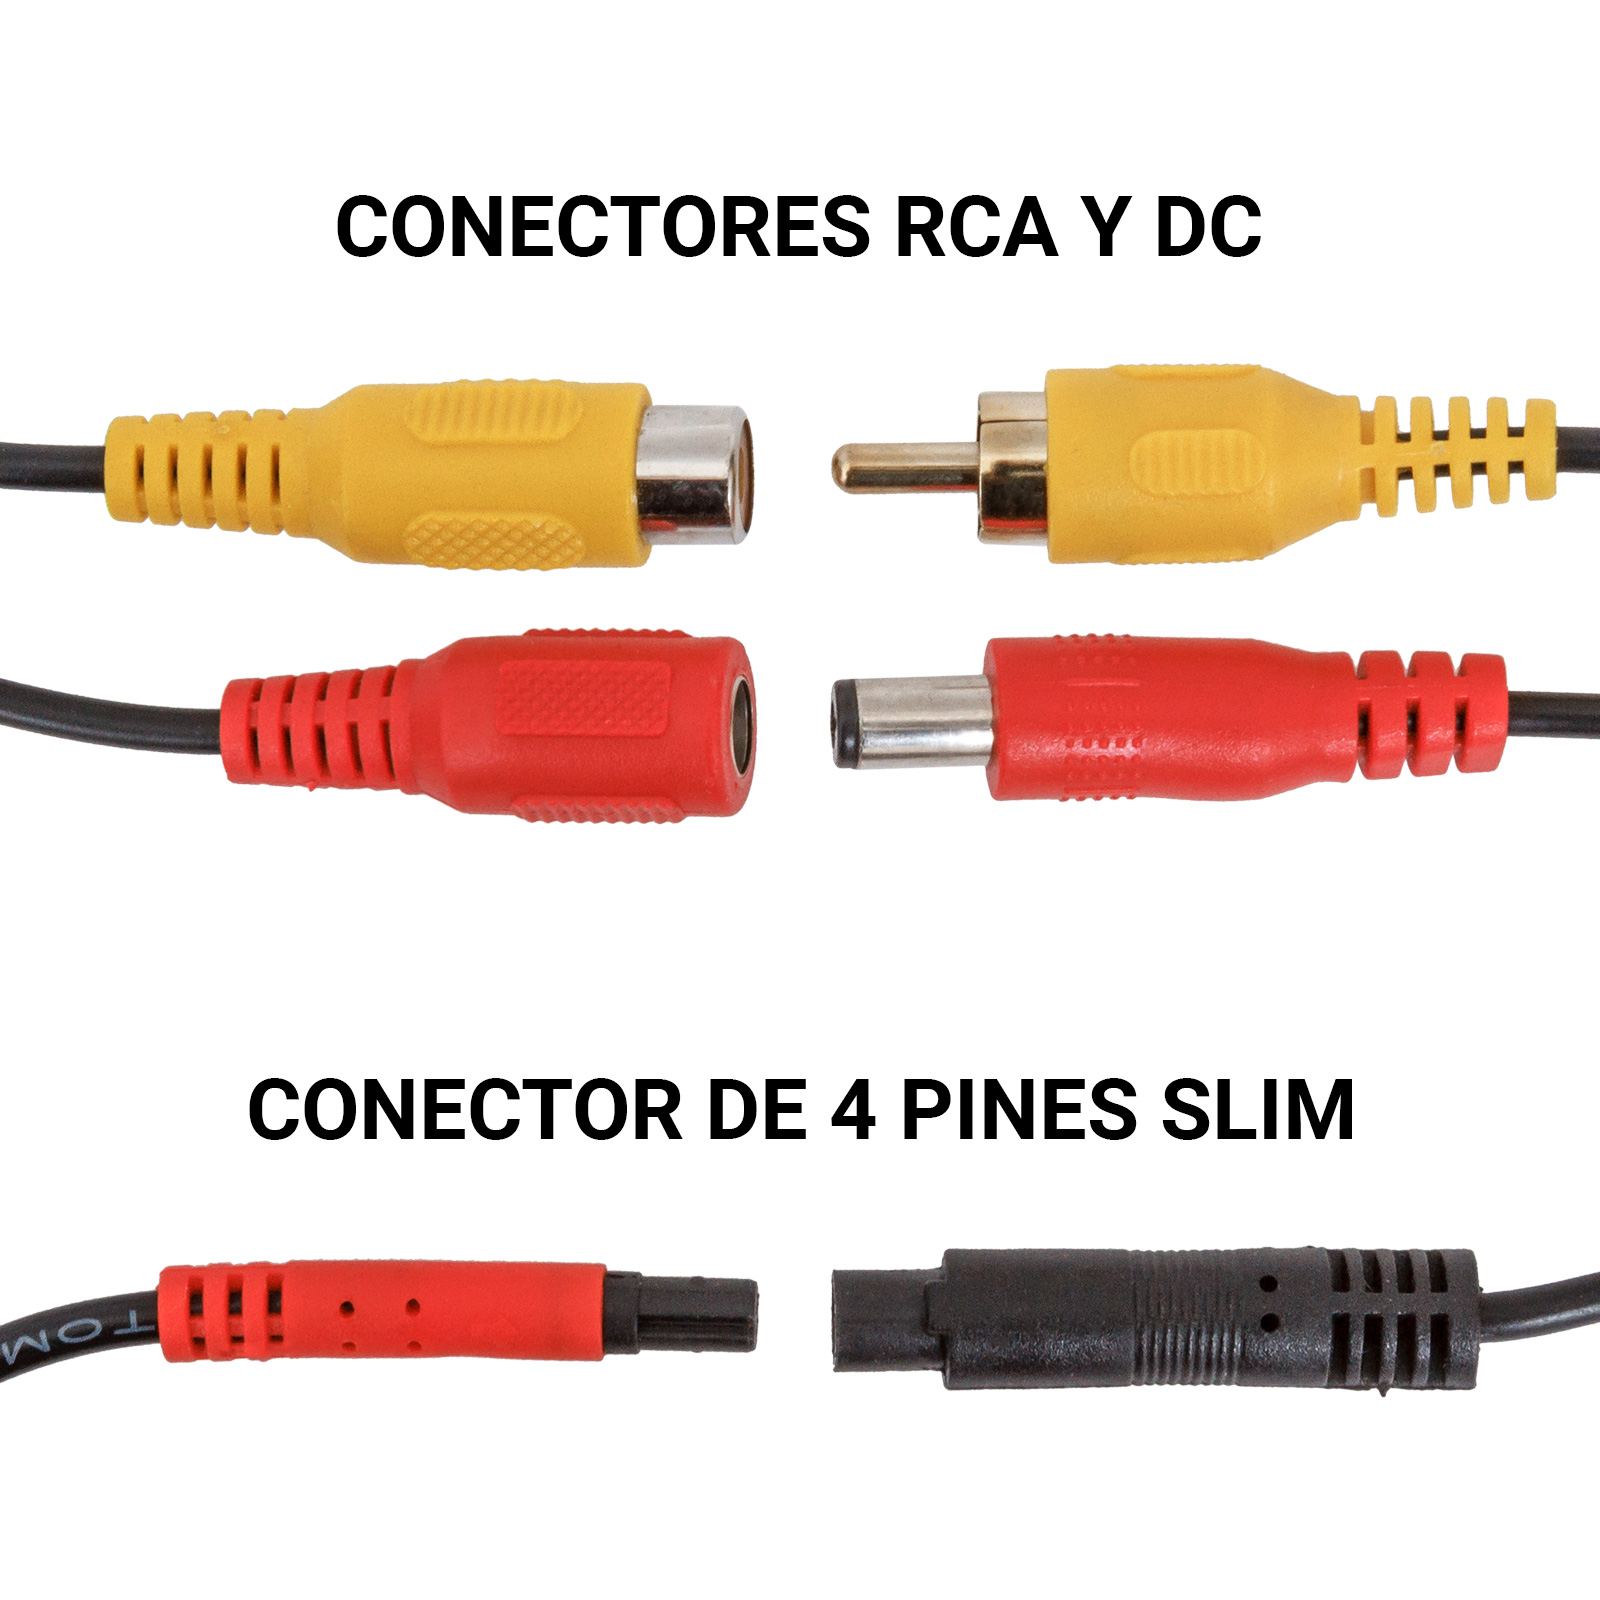 Comparación de conectores para señal de video